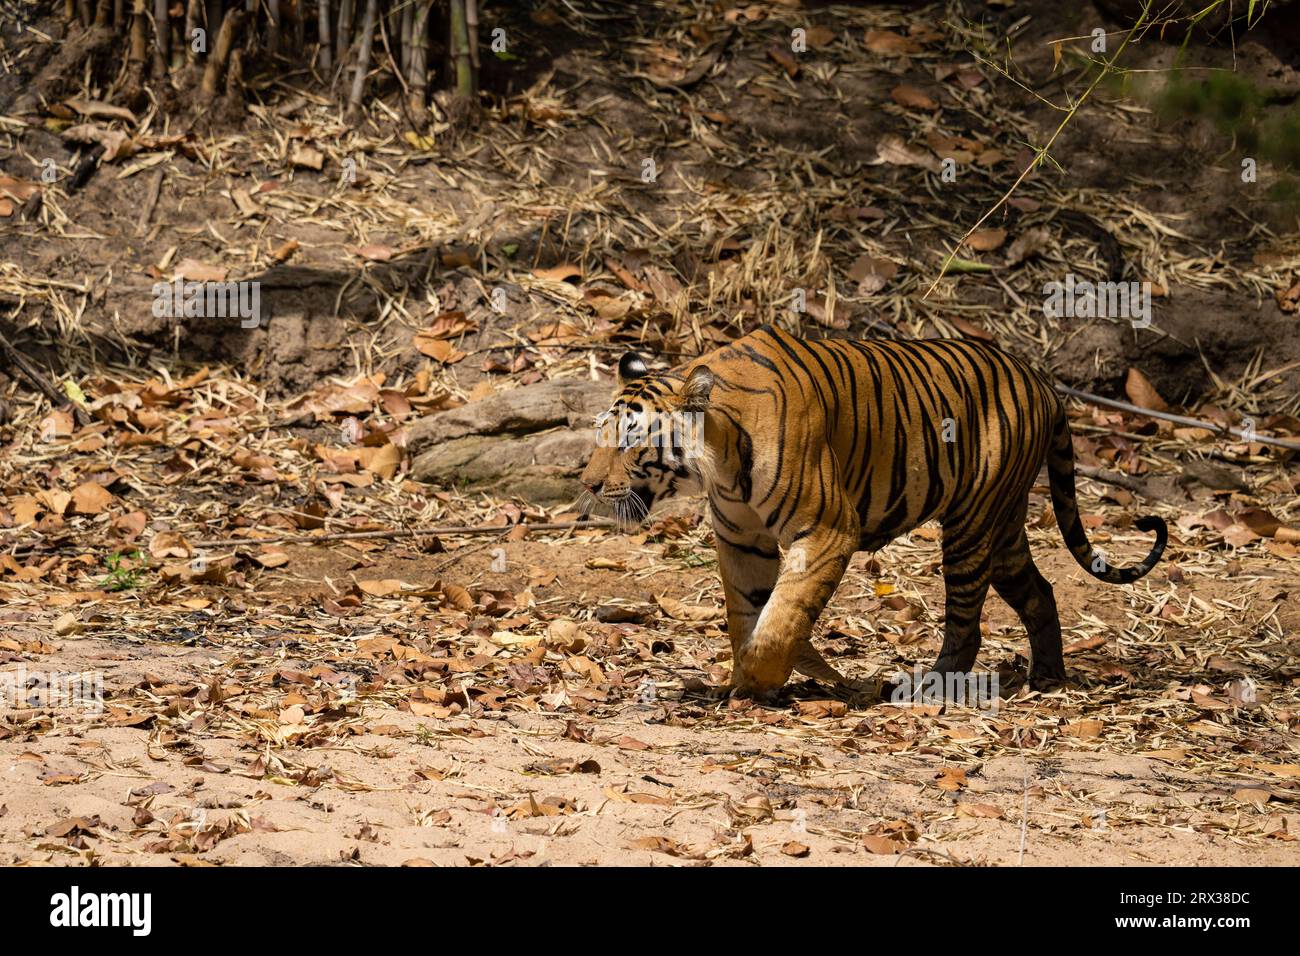 Bengal tiger (Panthera Tigris), Bandhavgarh National Park, Madhya Pradesh, India, Asia Stock Photo